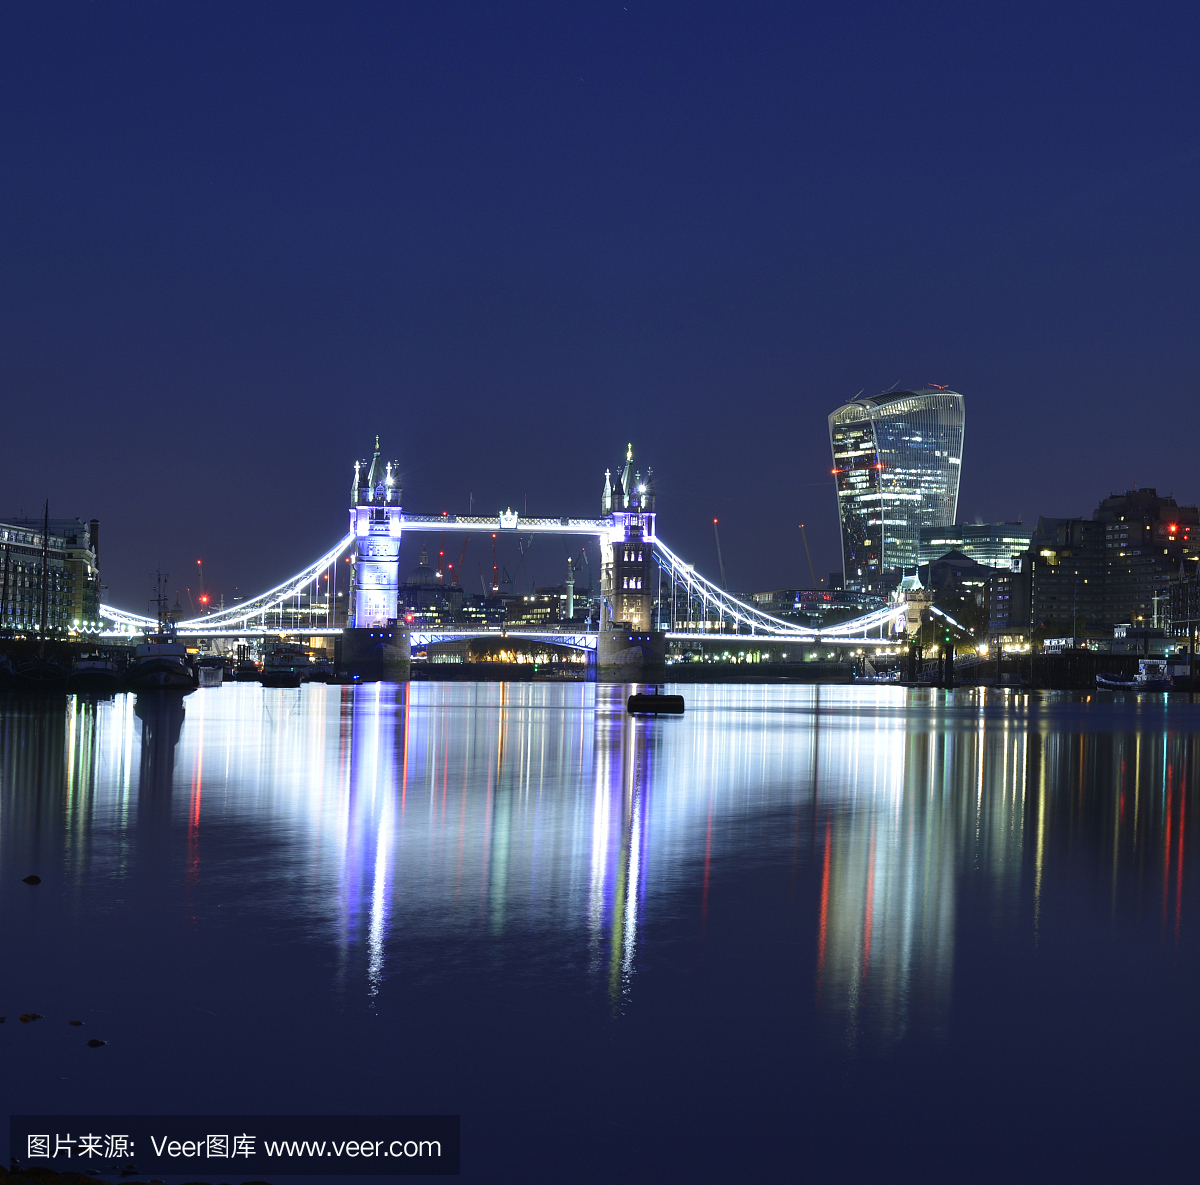 塔桥,伦敦铁桥,英国伦敦塔桥,伦敦塔桥